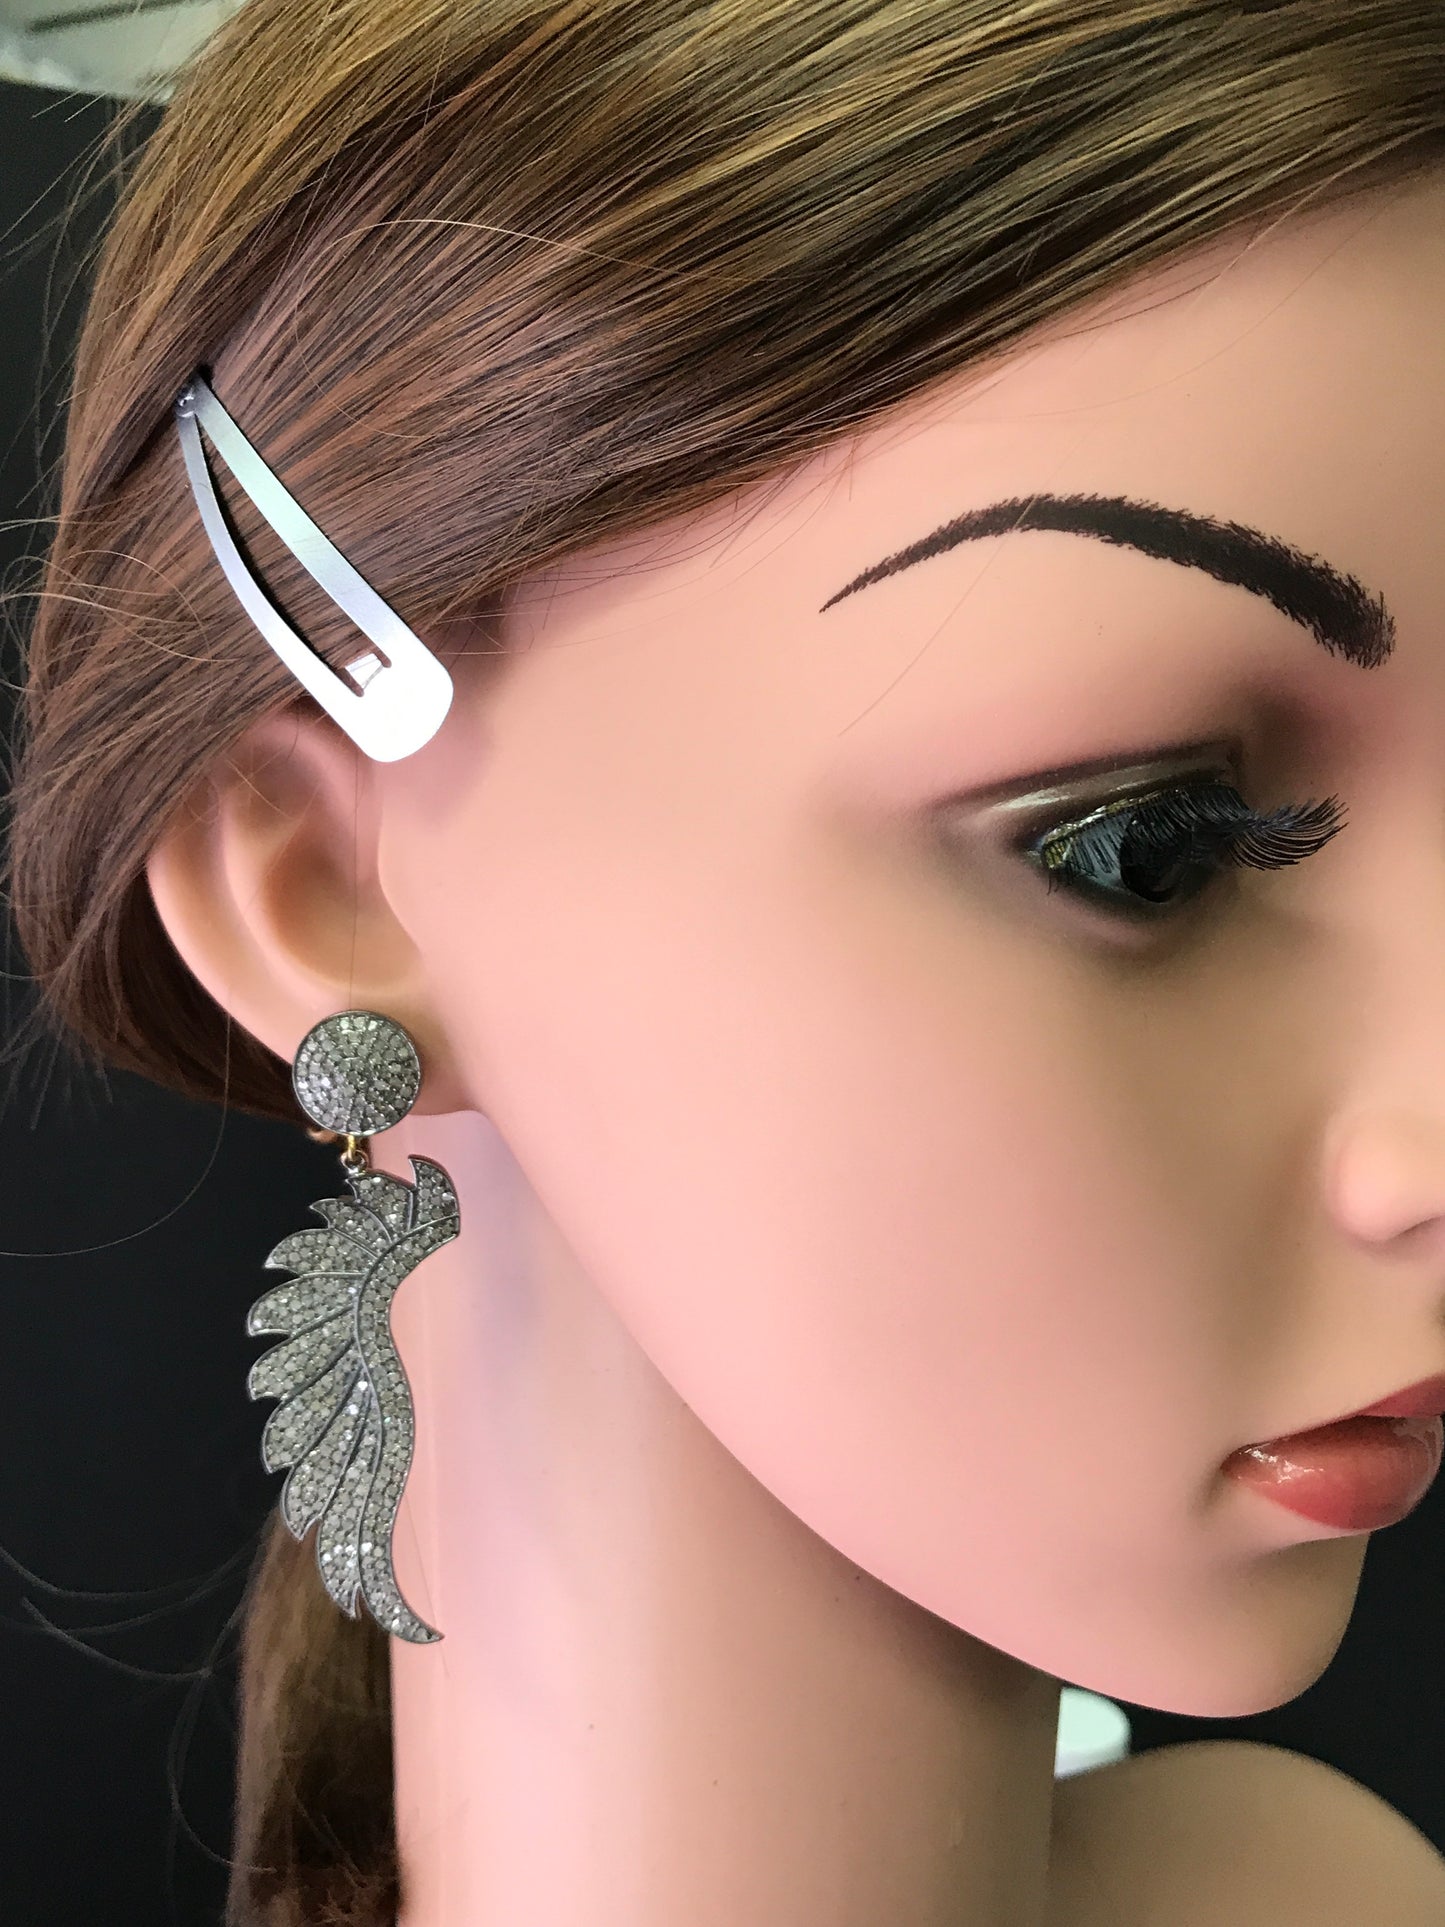 Angel Wing Diamond Earrings,